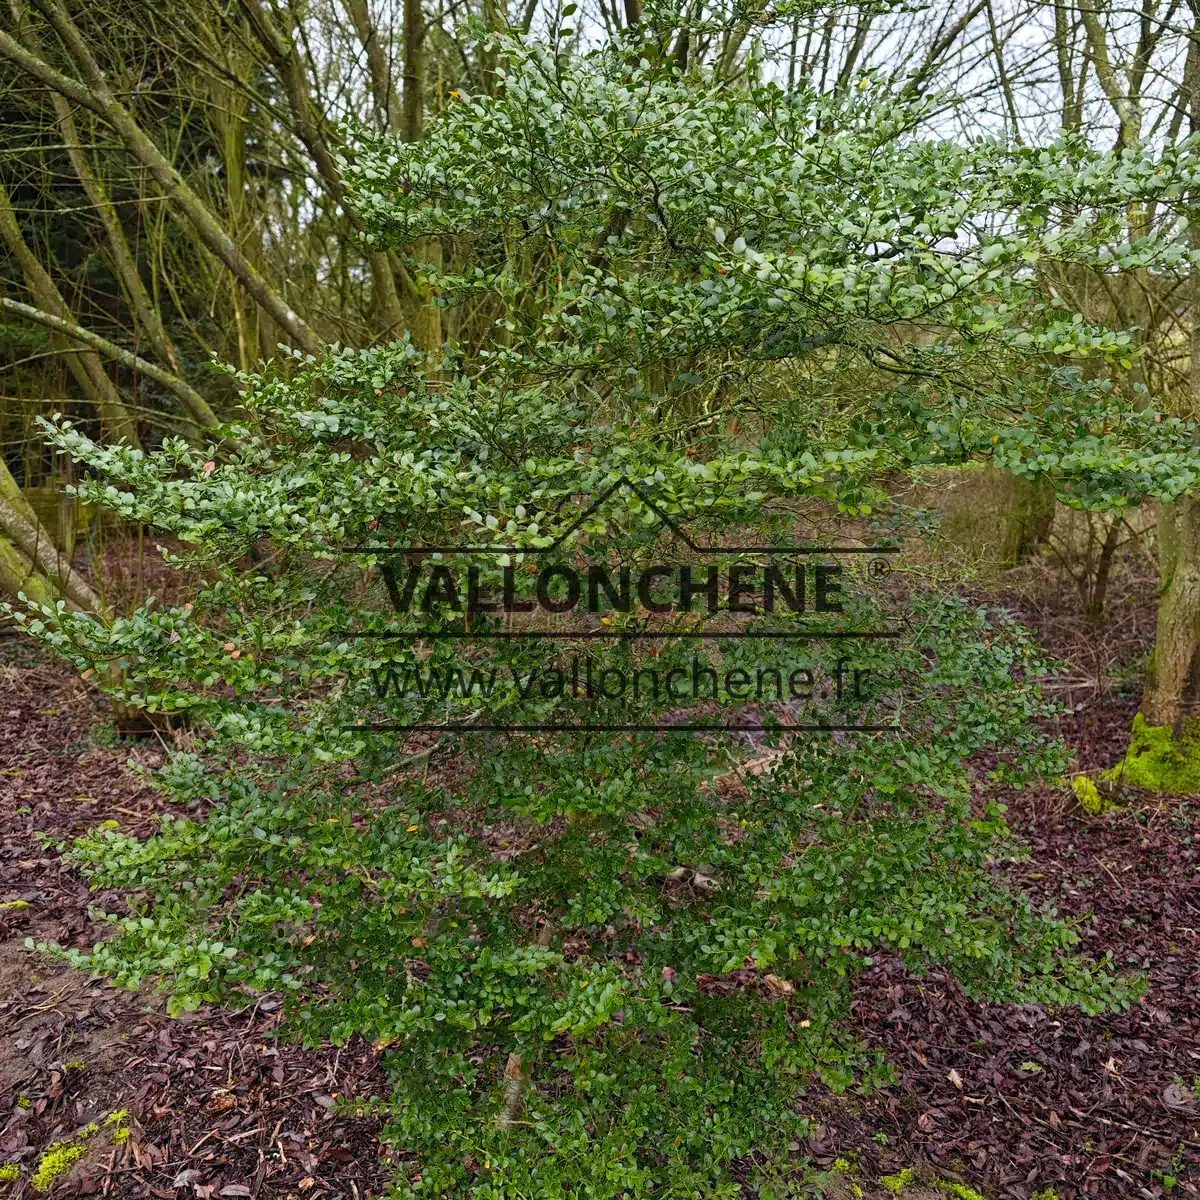 Ein 1,80 m großes und ein Dutzend Jahre altes Exemplar von NOTHOFAGUS betuloides im Vallonchêne-Garten